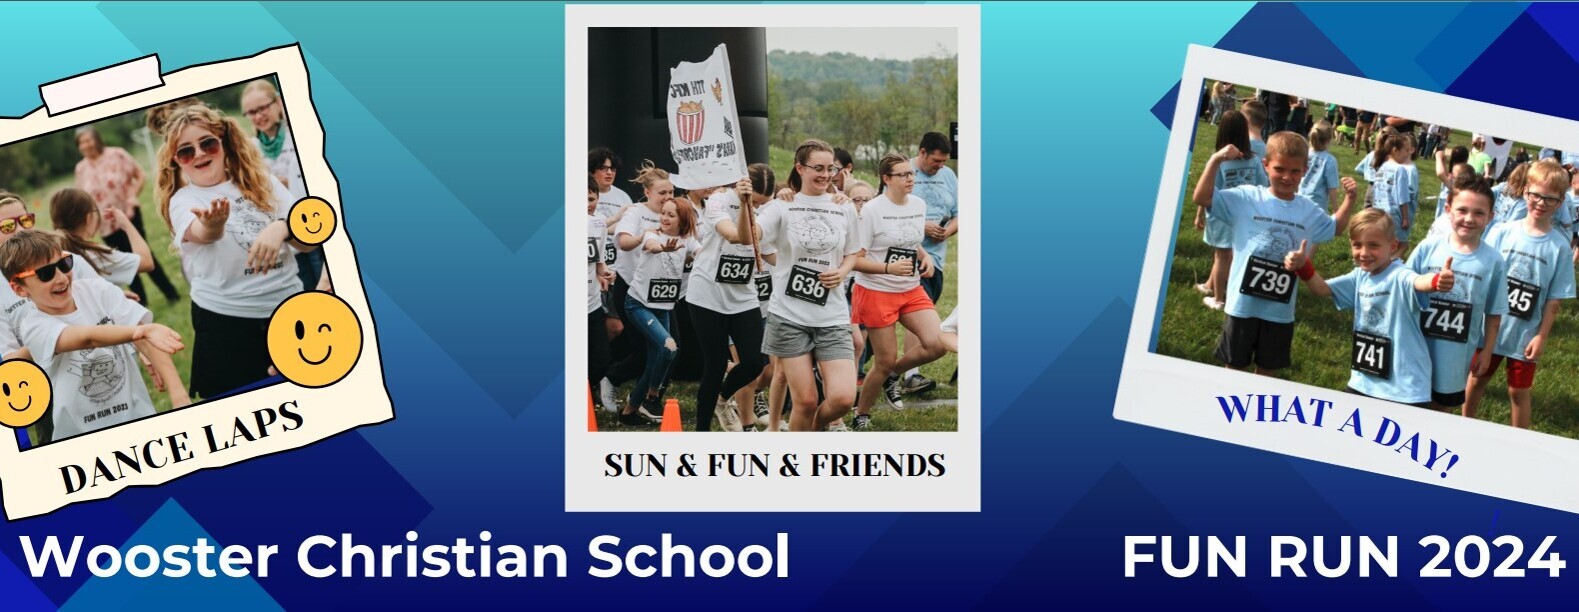 Wooster Christian School Fun Run 2024